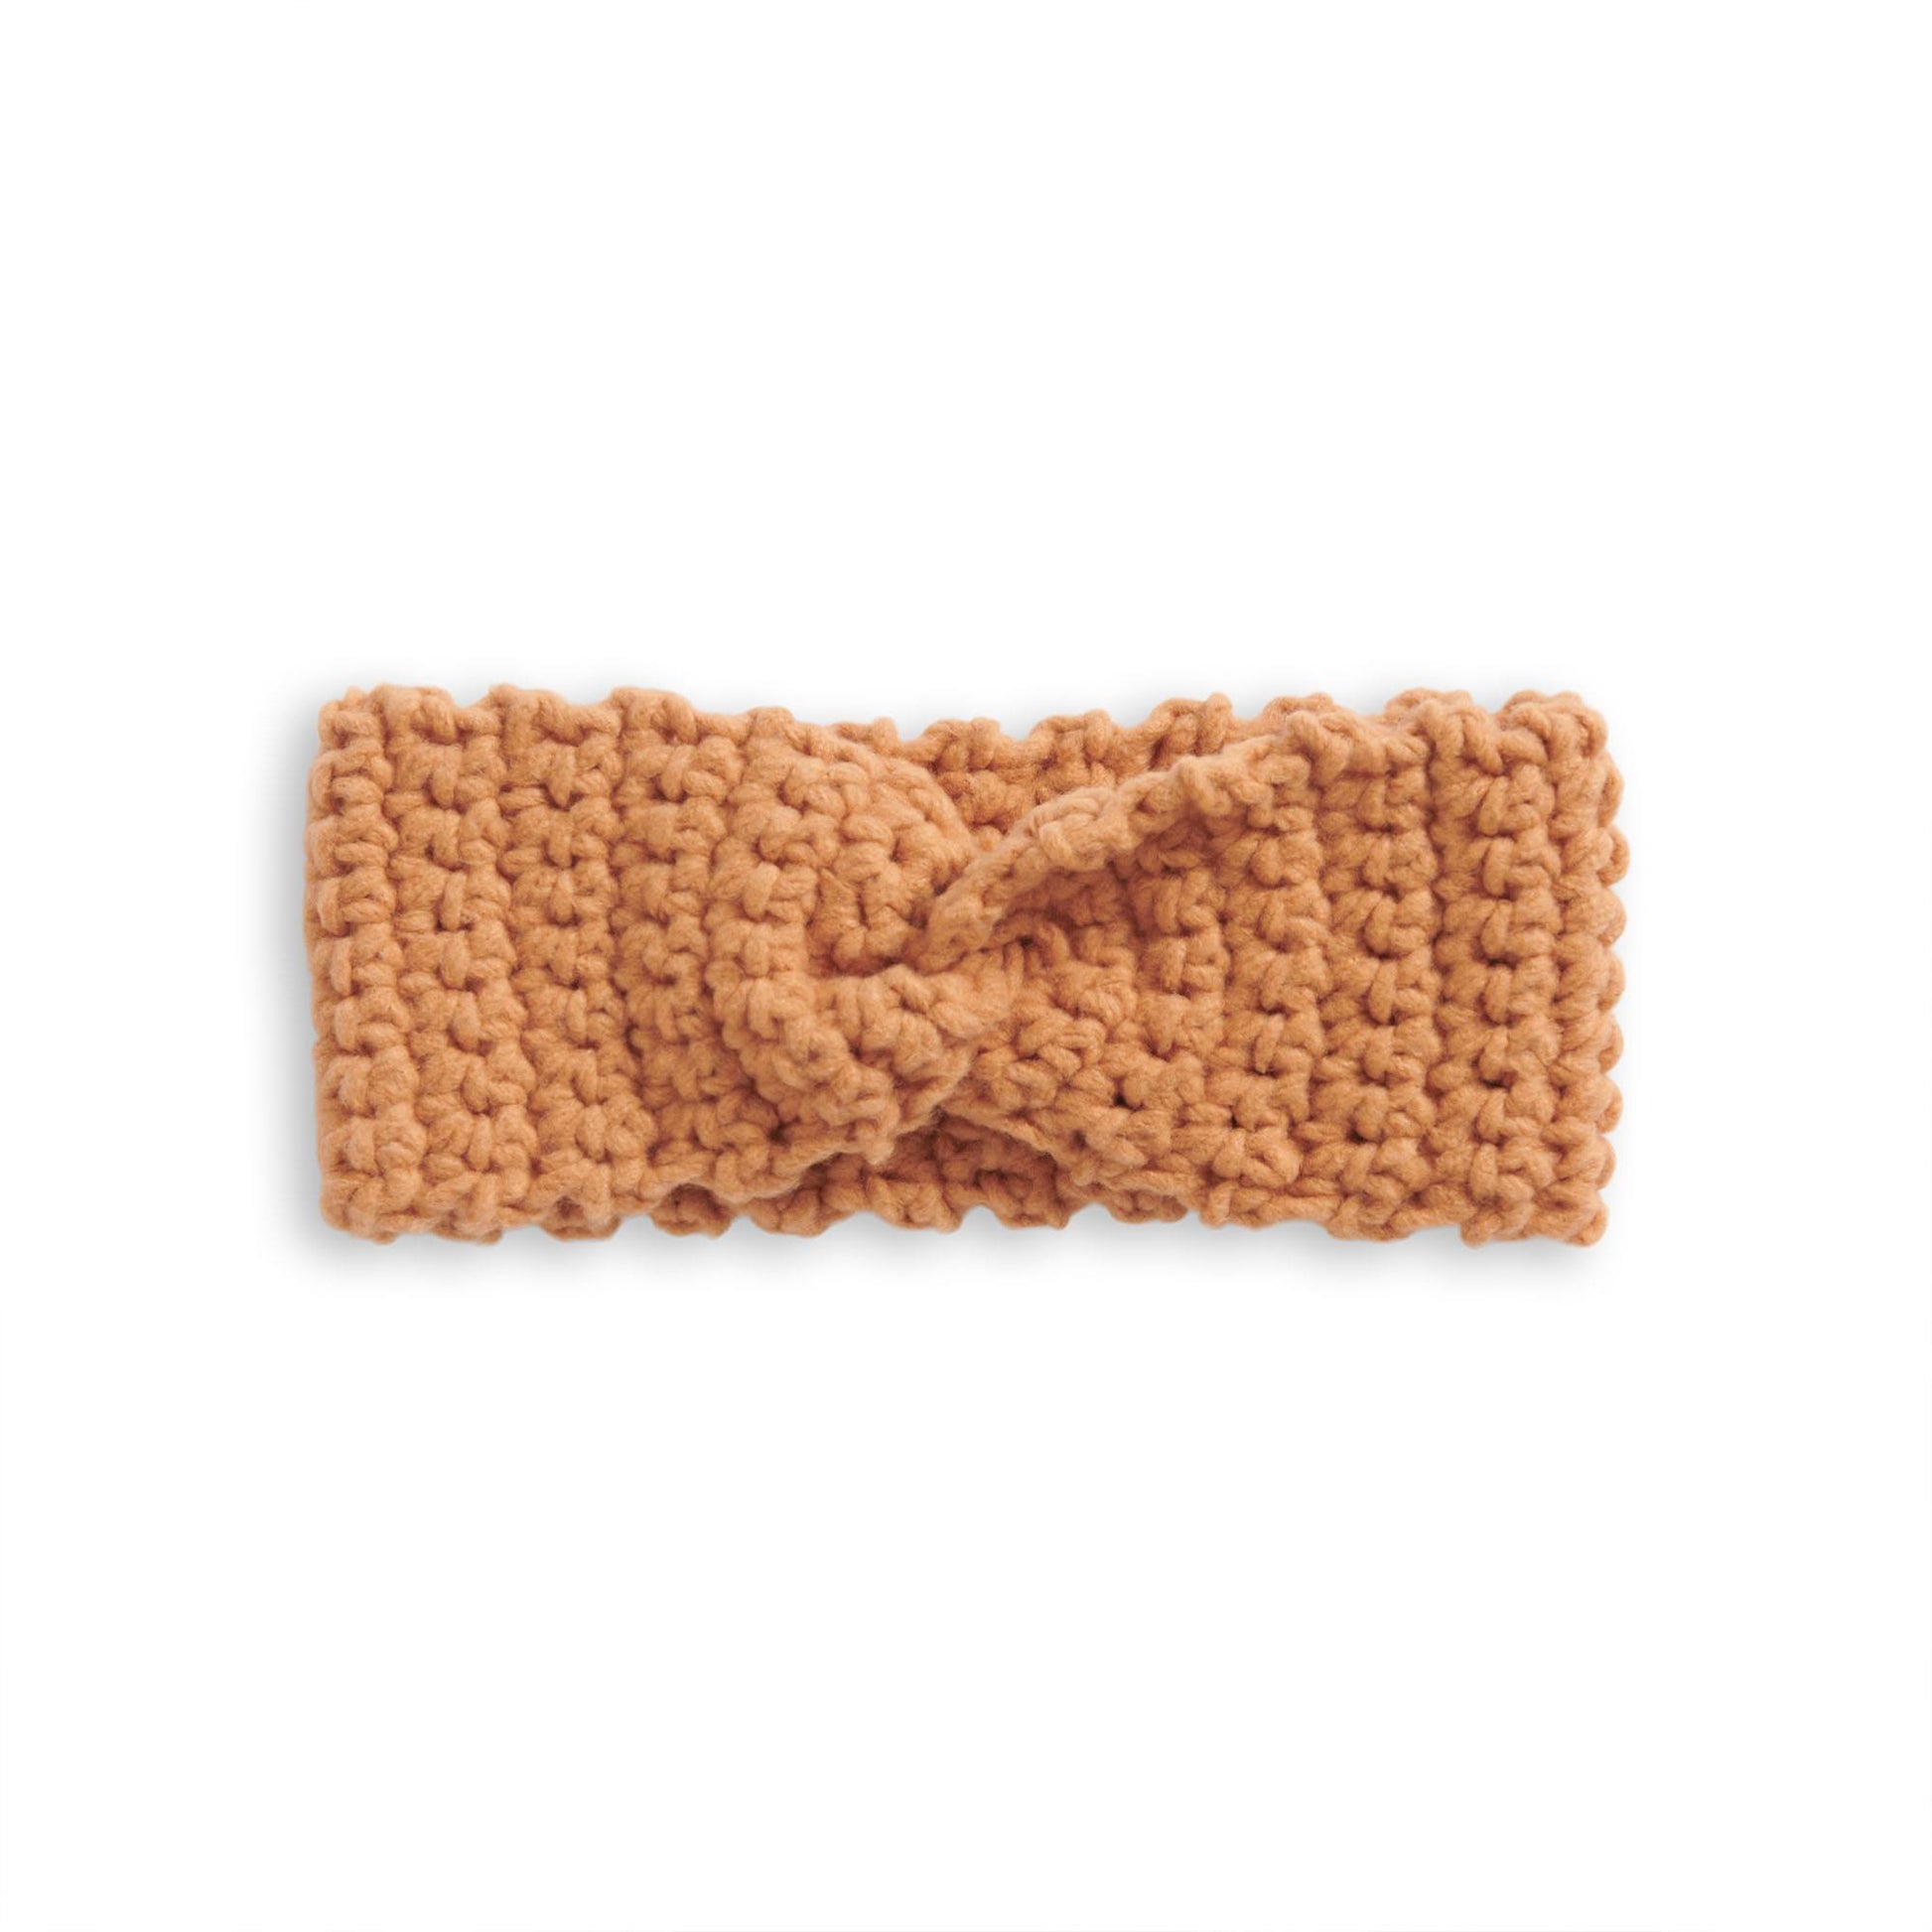 BEST Bernat Yarn Headband? Crochet Headband Tutorial 